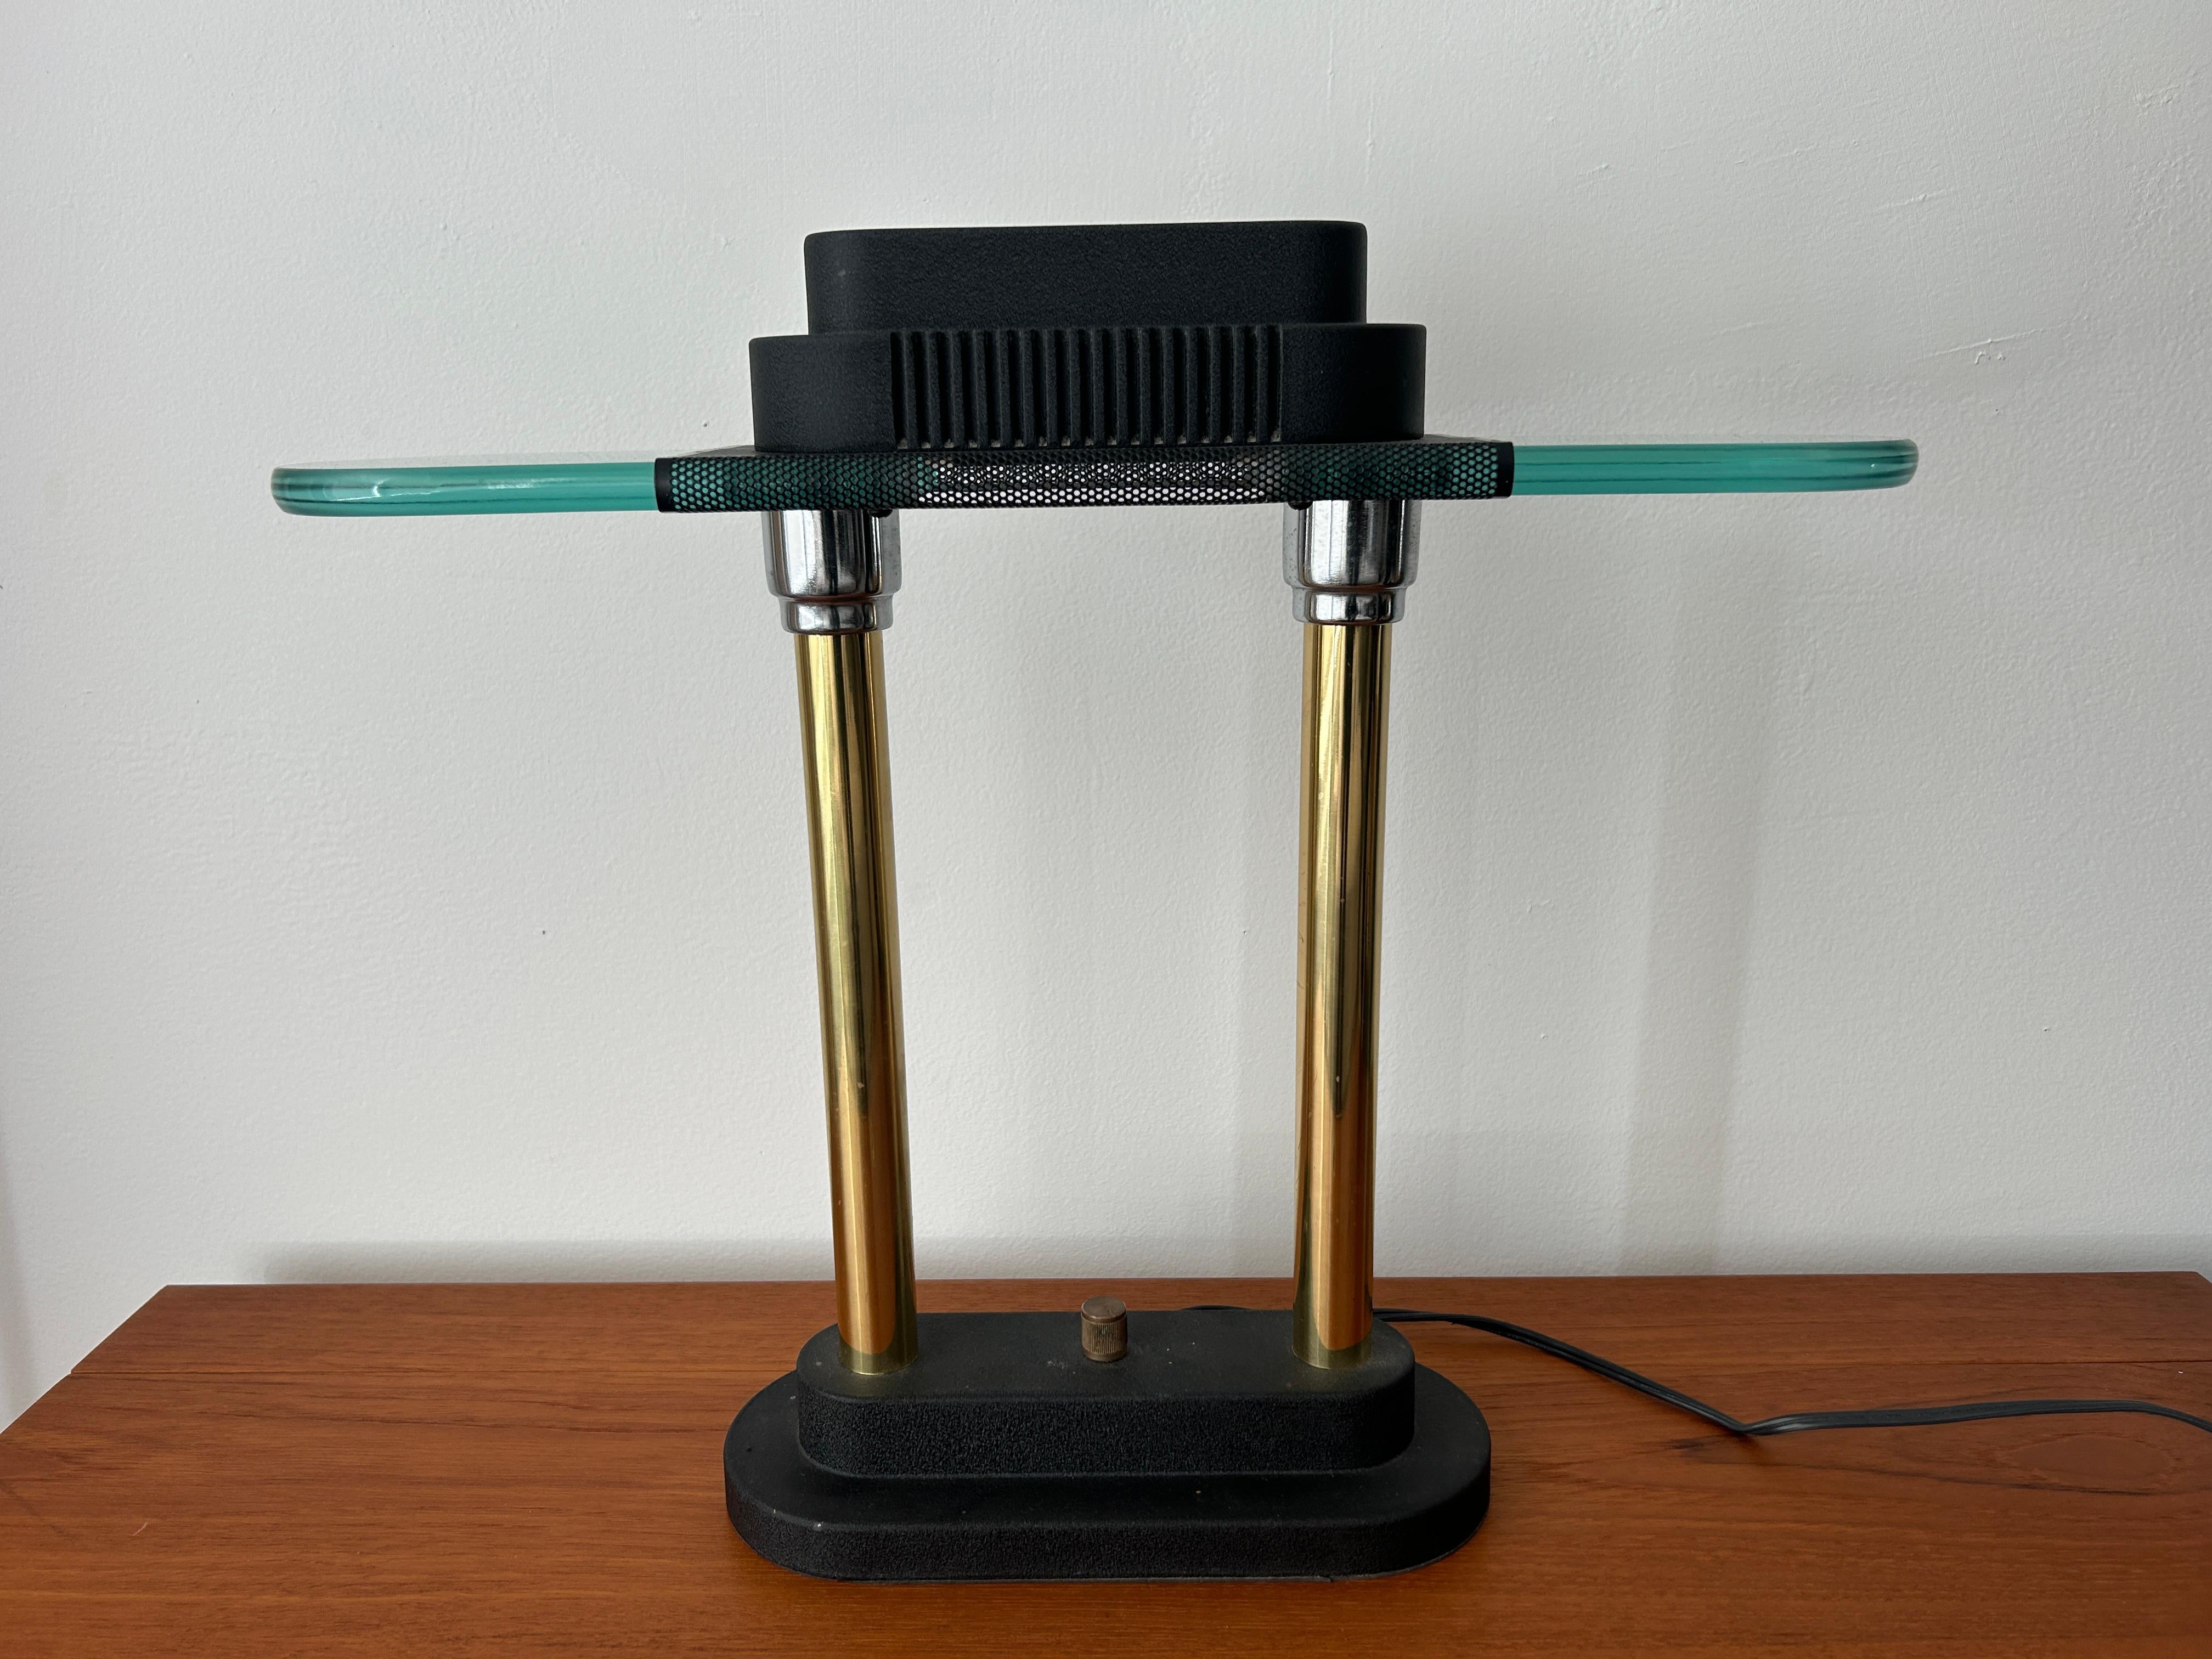 Lampe de bureau halogène au design postmoderne d'après Robert Sonneman pour Kovacs. S'utilise avec une ampoule halogène de 60 watts maximum. Variateur d'intensité avec bouton au centre de la base.  

Dimensions : H 15,25 x L 17,5 x P 4,75 in : H